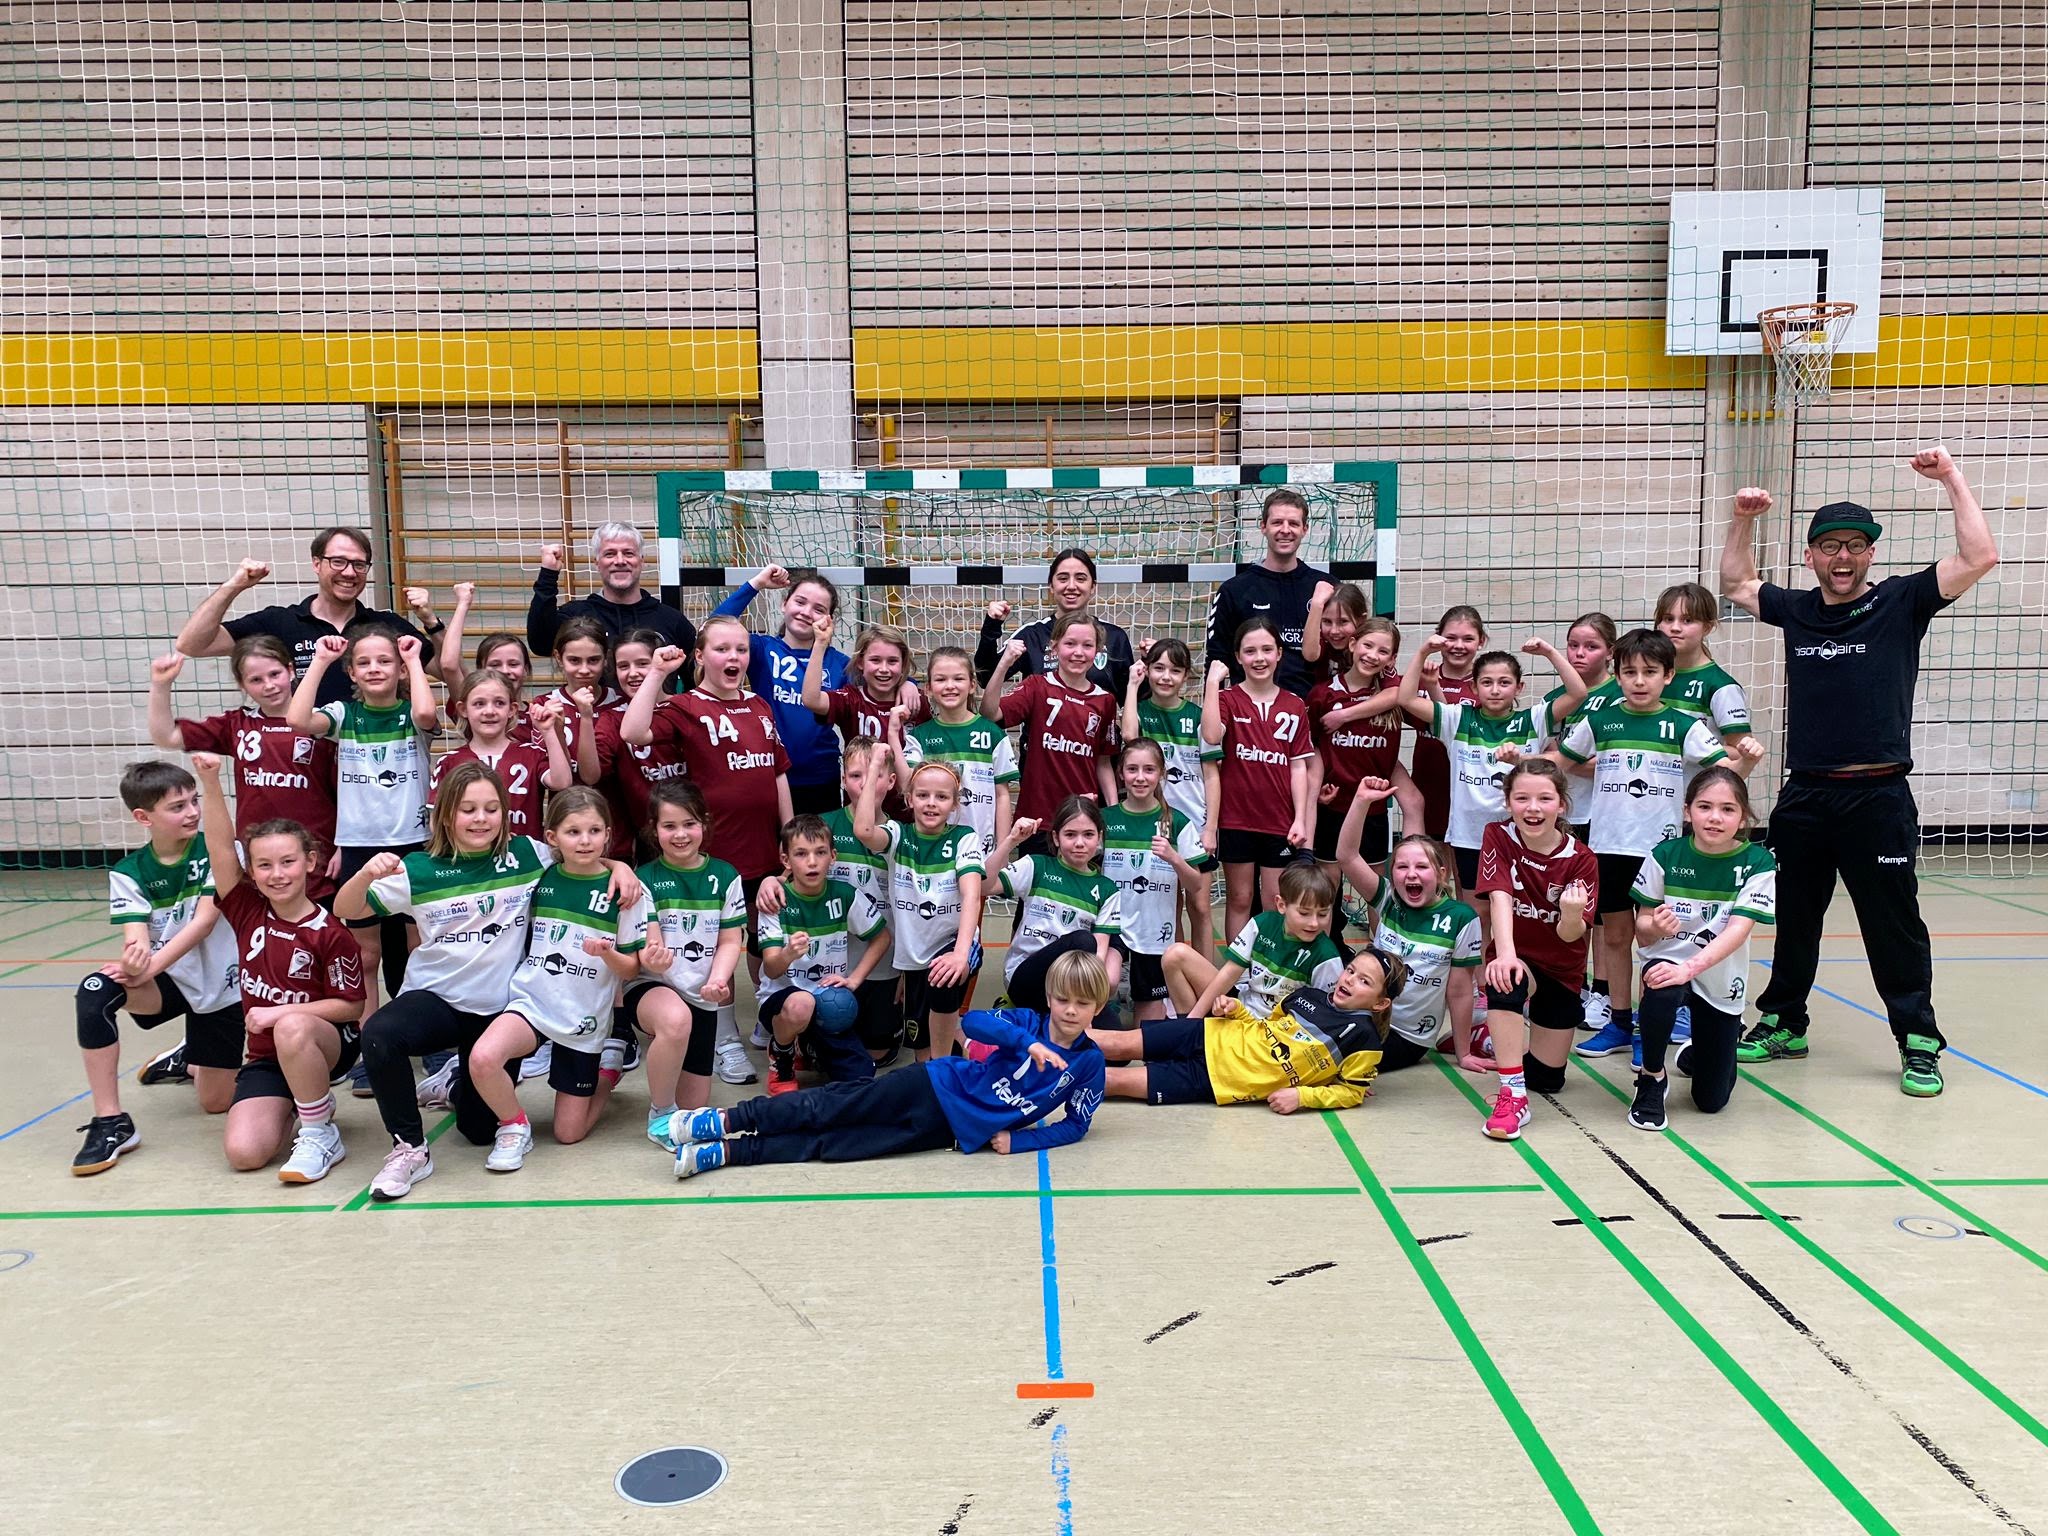 Triumphaler Abschluss der Handballsaison für die E-Jugend